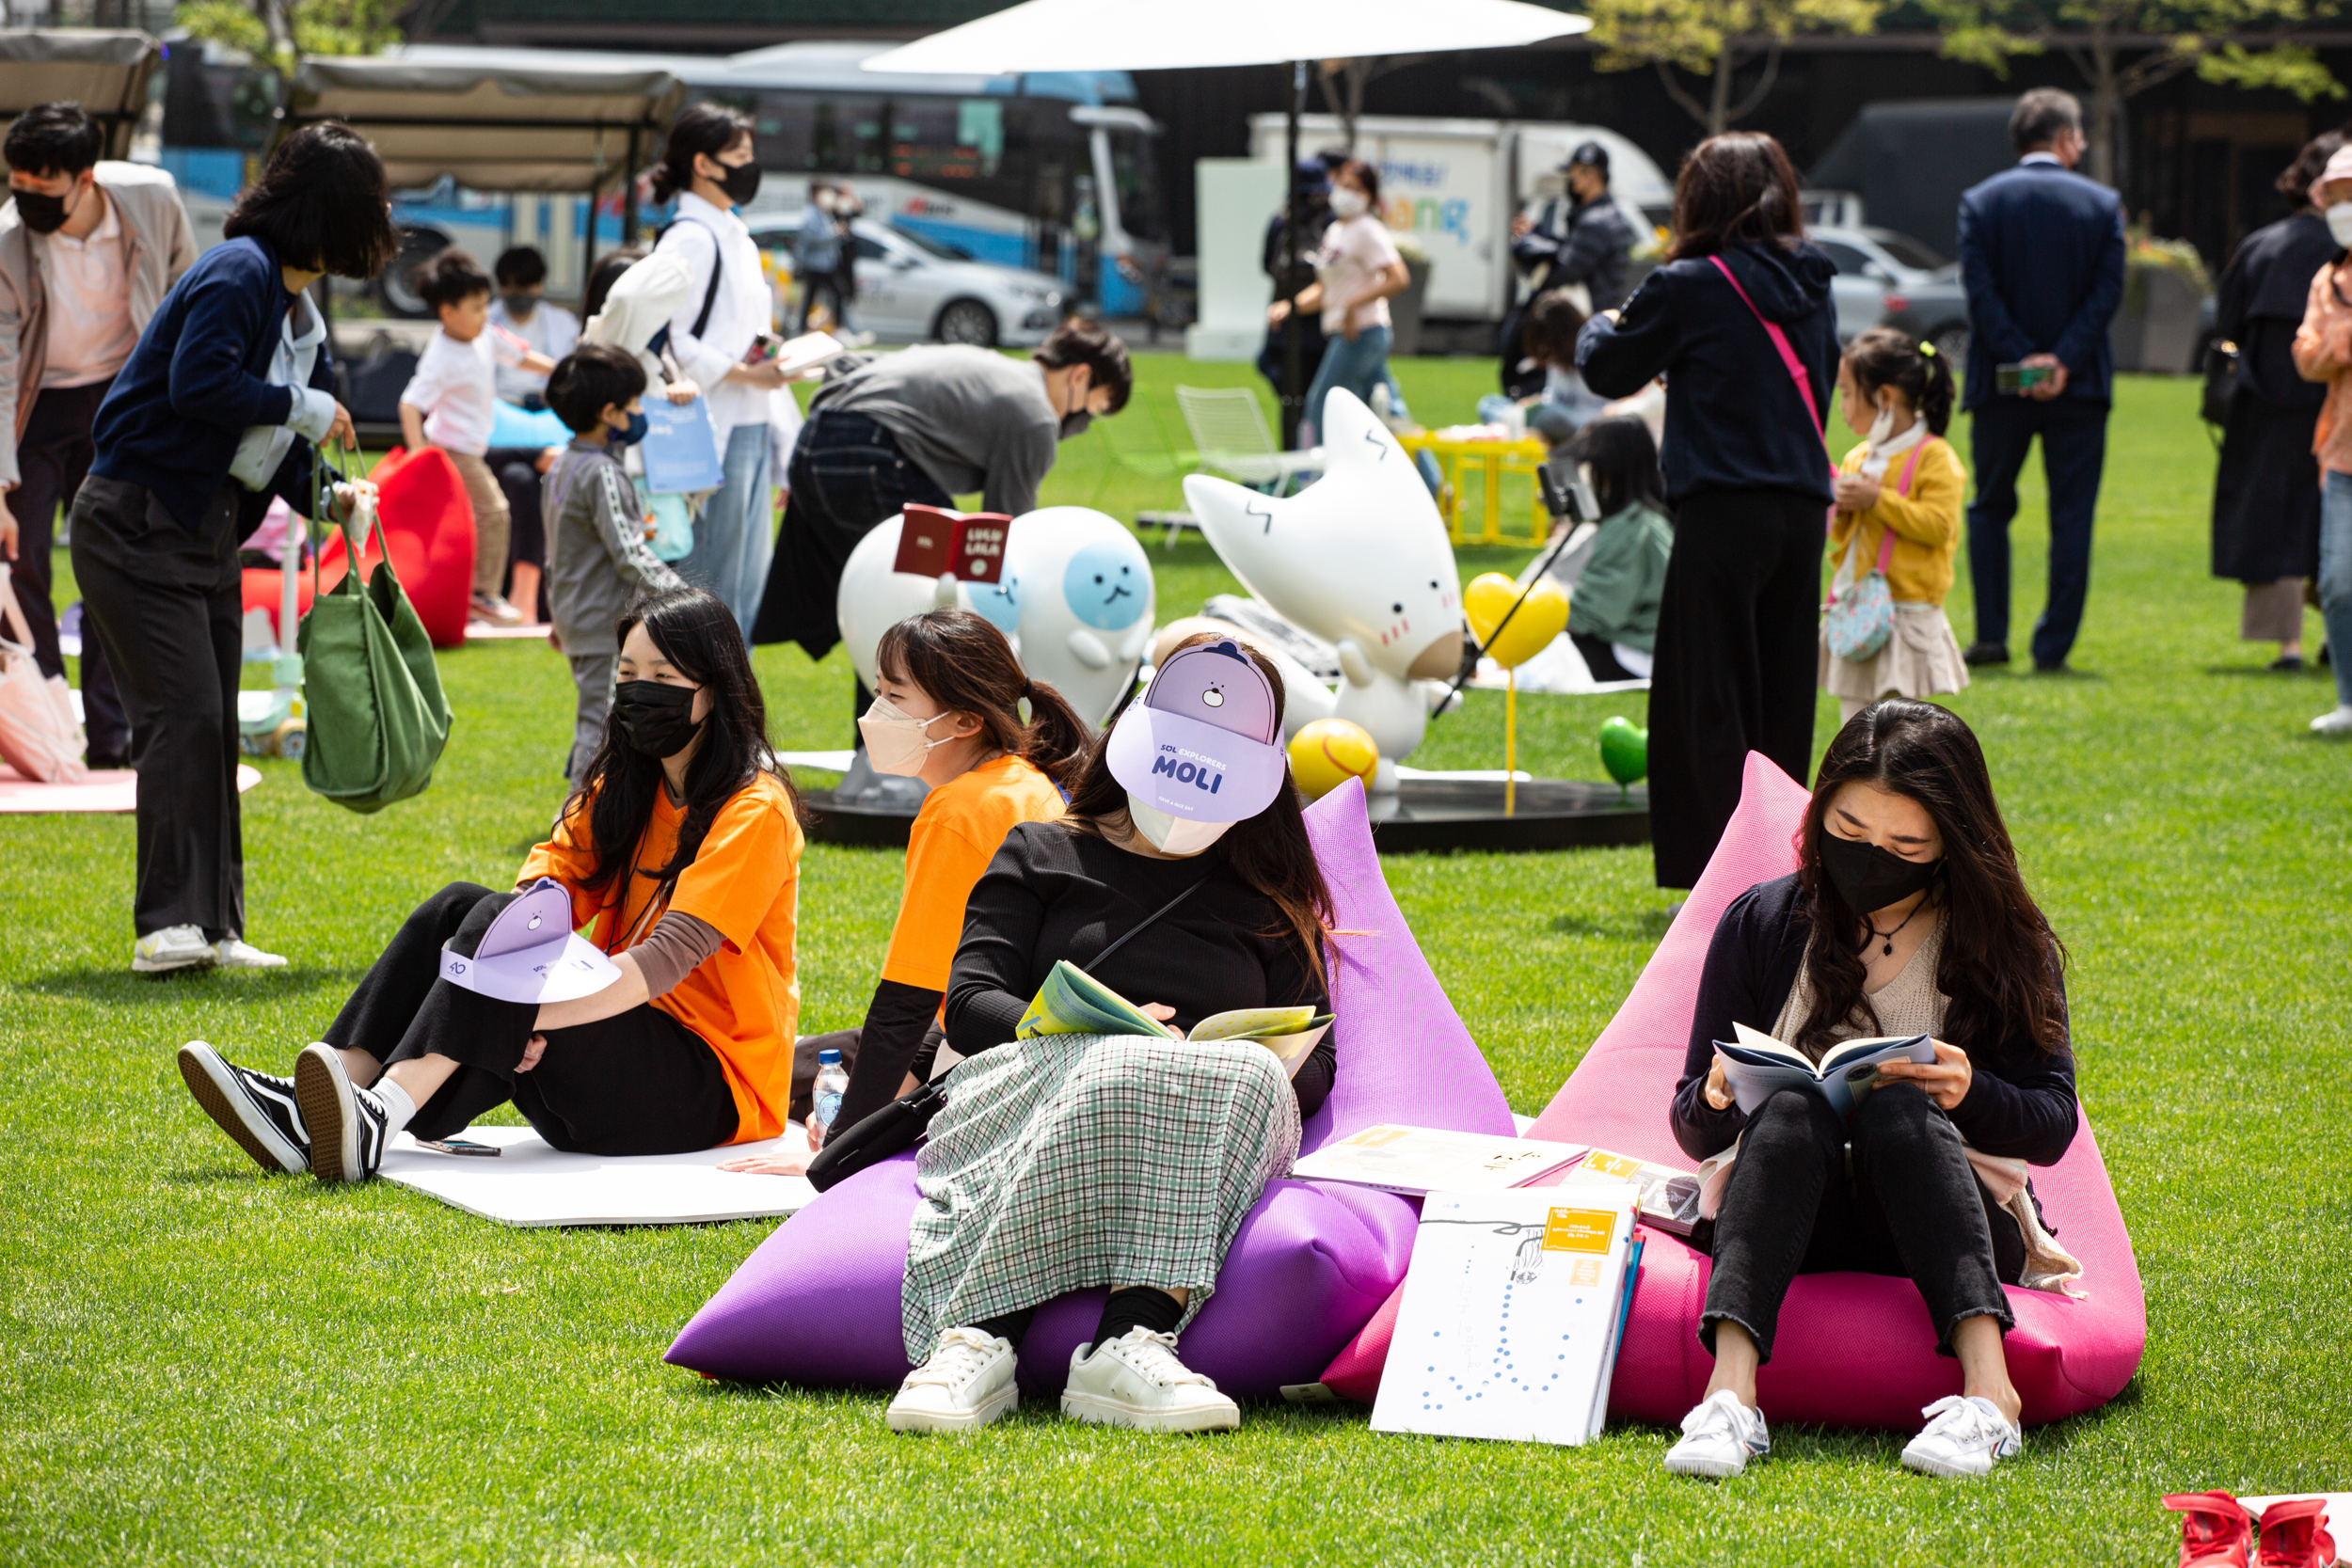 서울광장에서 열리는 축제 ‘책 읽는 서울광장’에 참여한 시민들의 모습. 서울시 제공